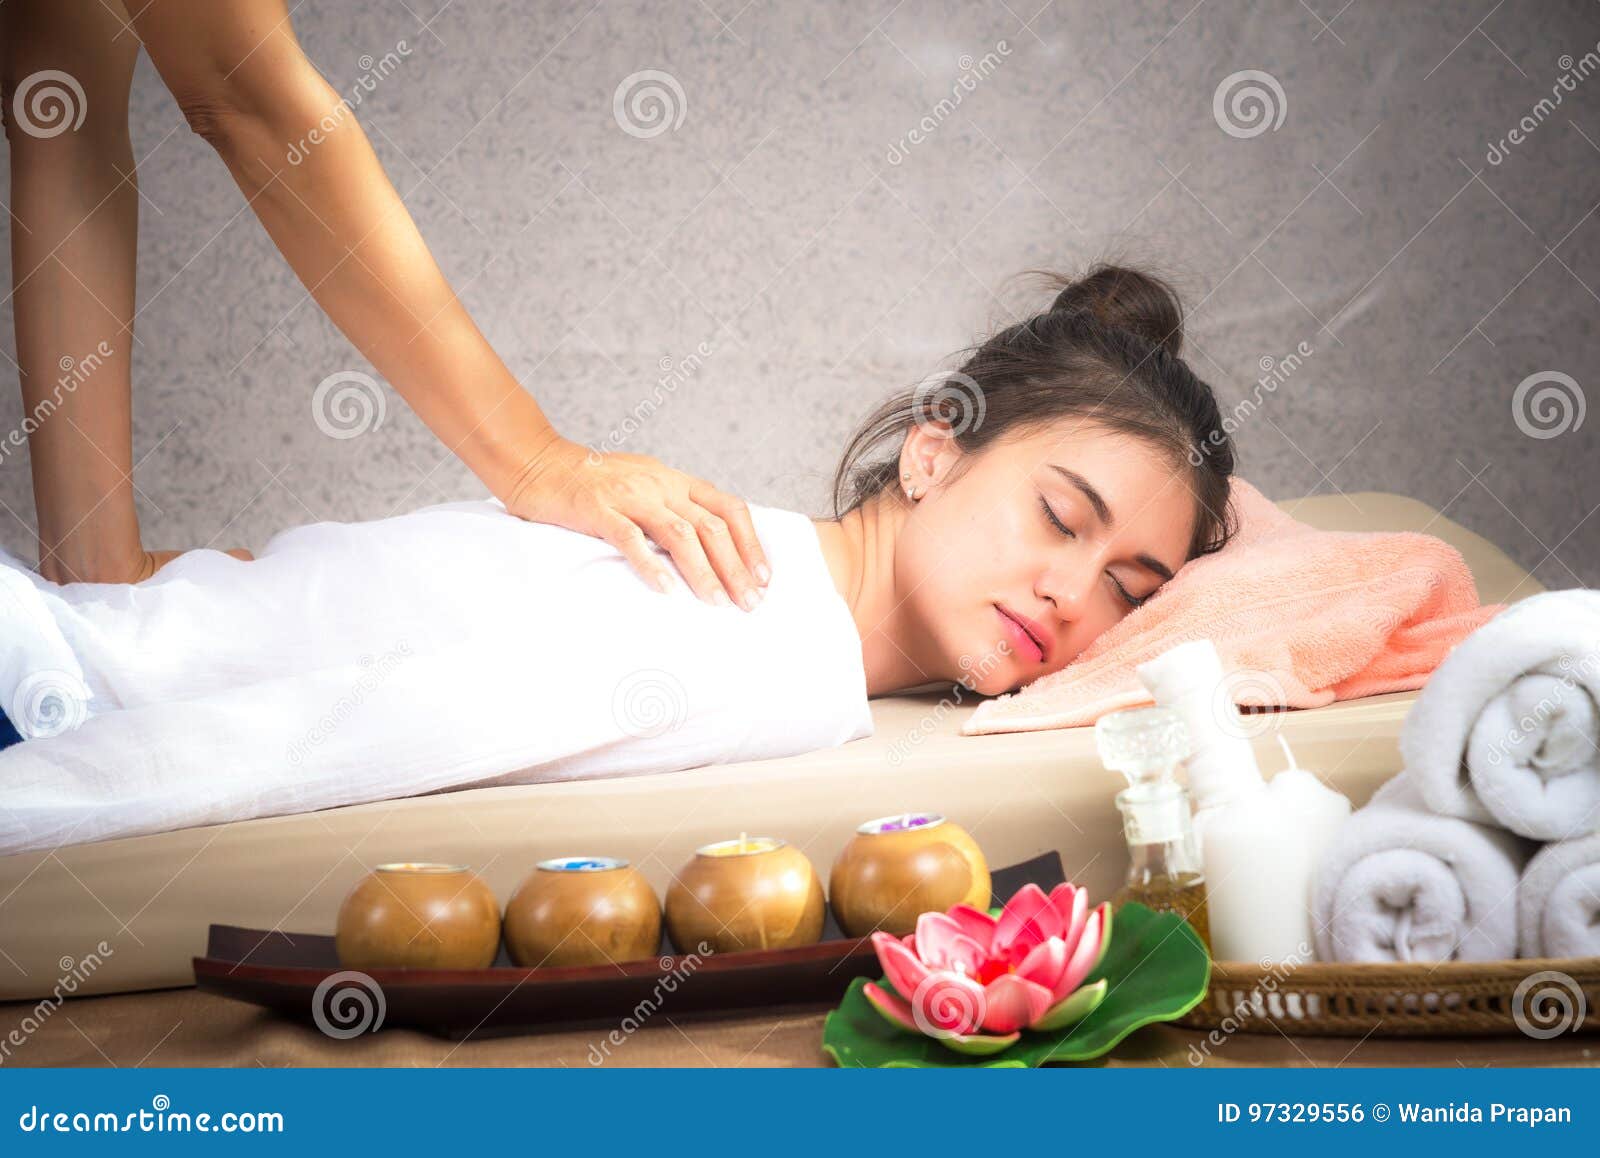 azjatycki masażystka pocierając duże wargi cipki